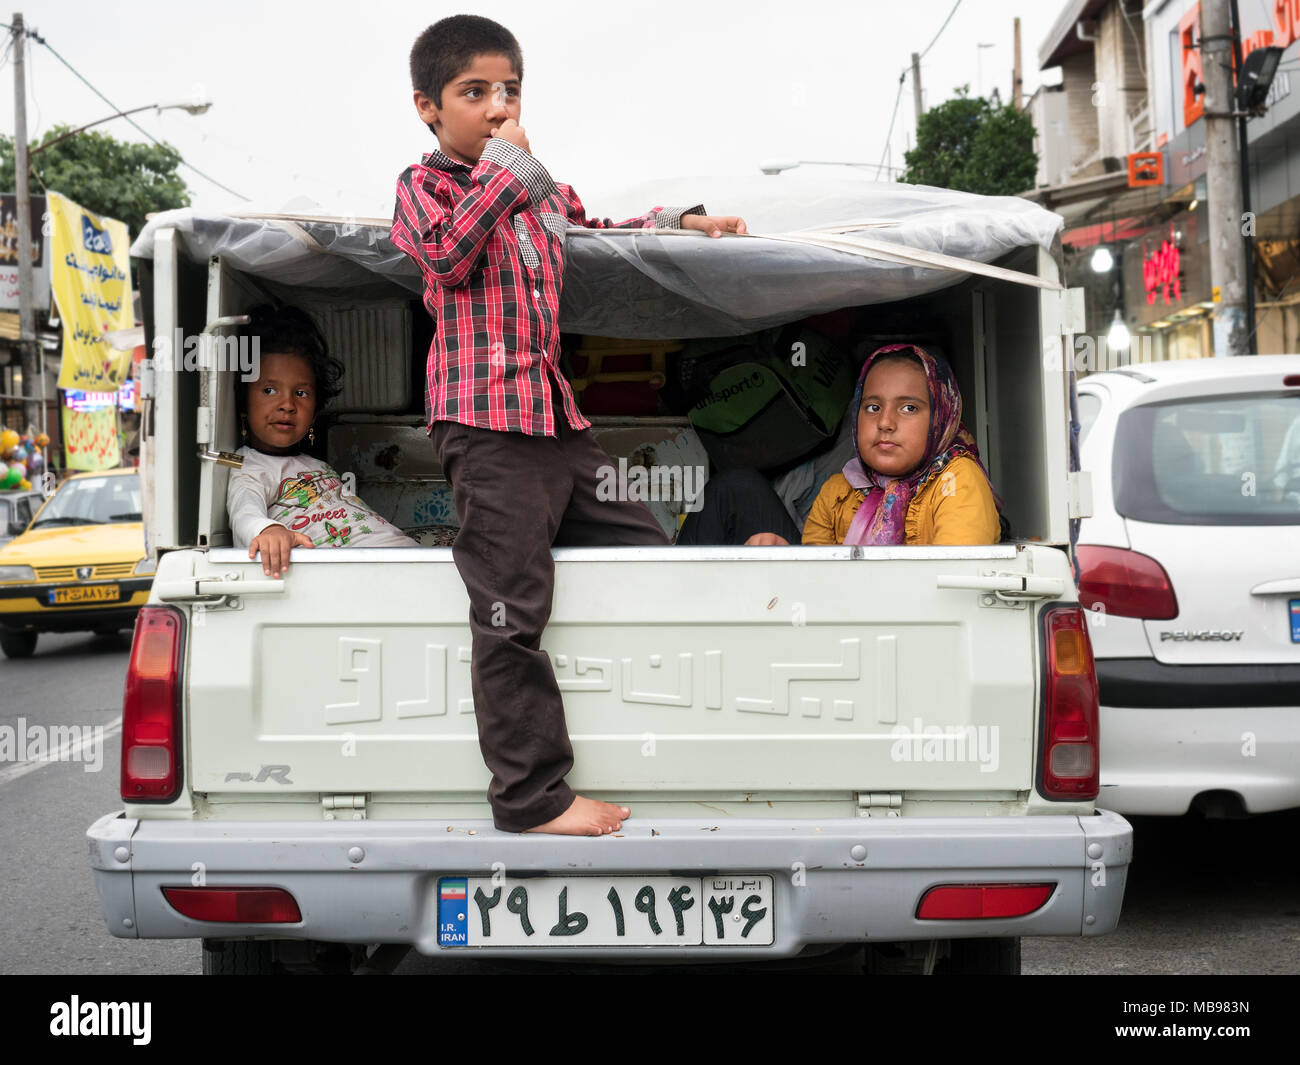 Les jeunes passagers à l'arrière d'une camionnette en ville. Babolsar, province de Mazandaran, Iran Banque D'Images